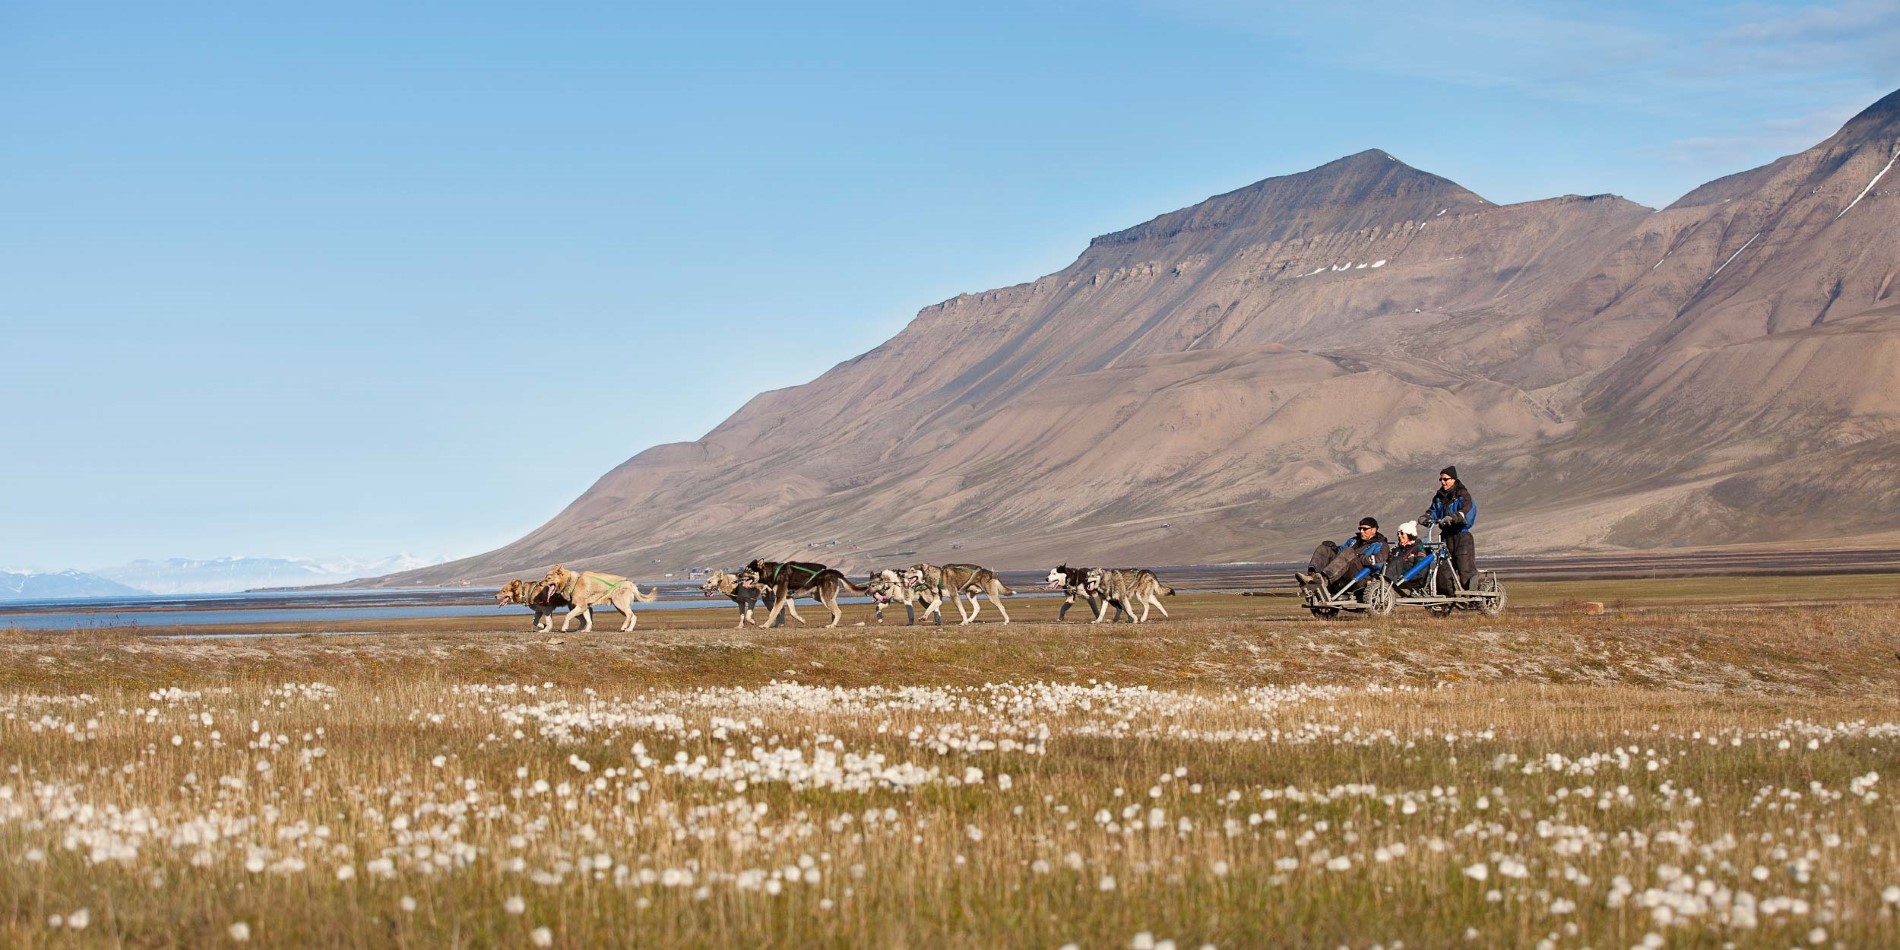 Hundesledetur på hjul som sommeren/våren, Spitsbergen/svalbard